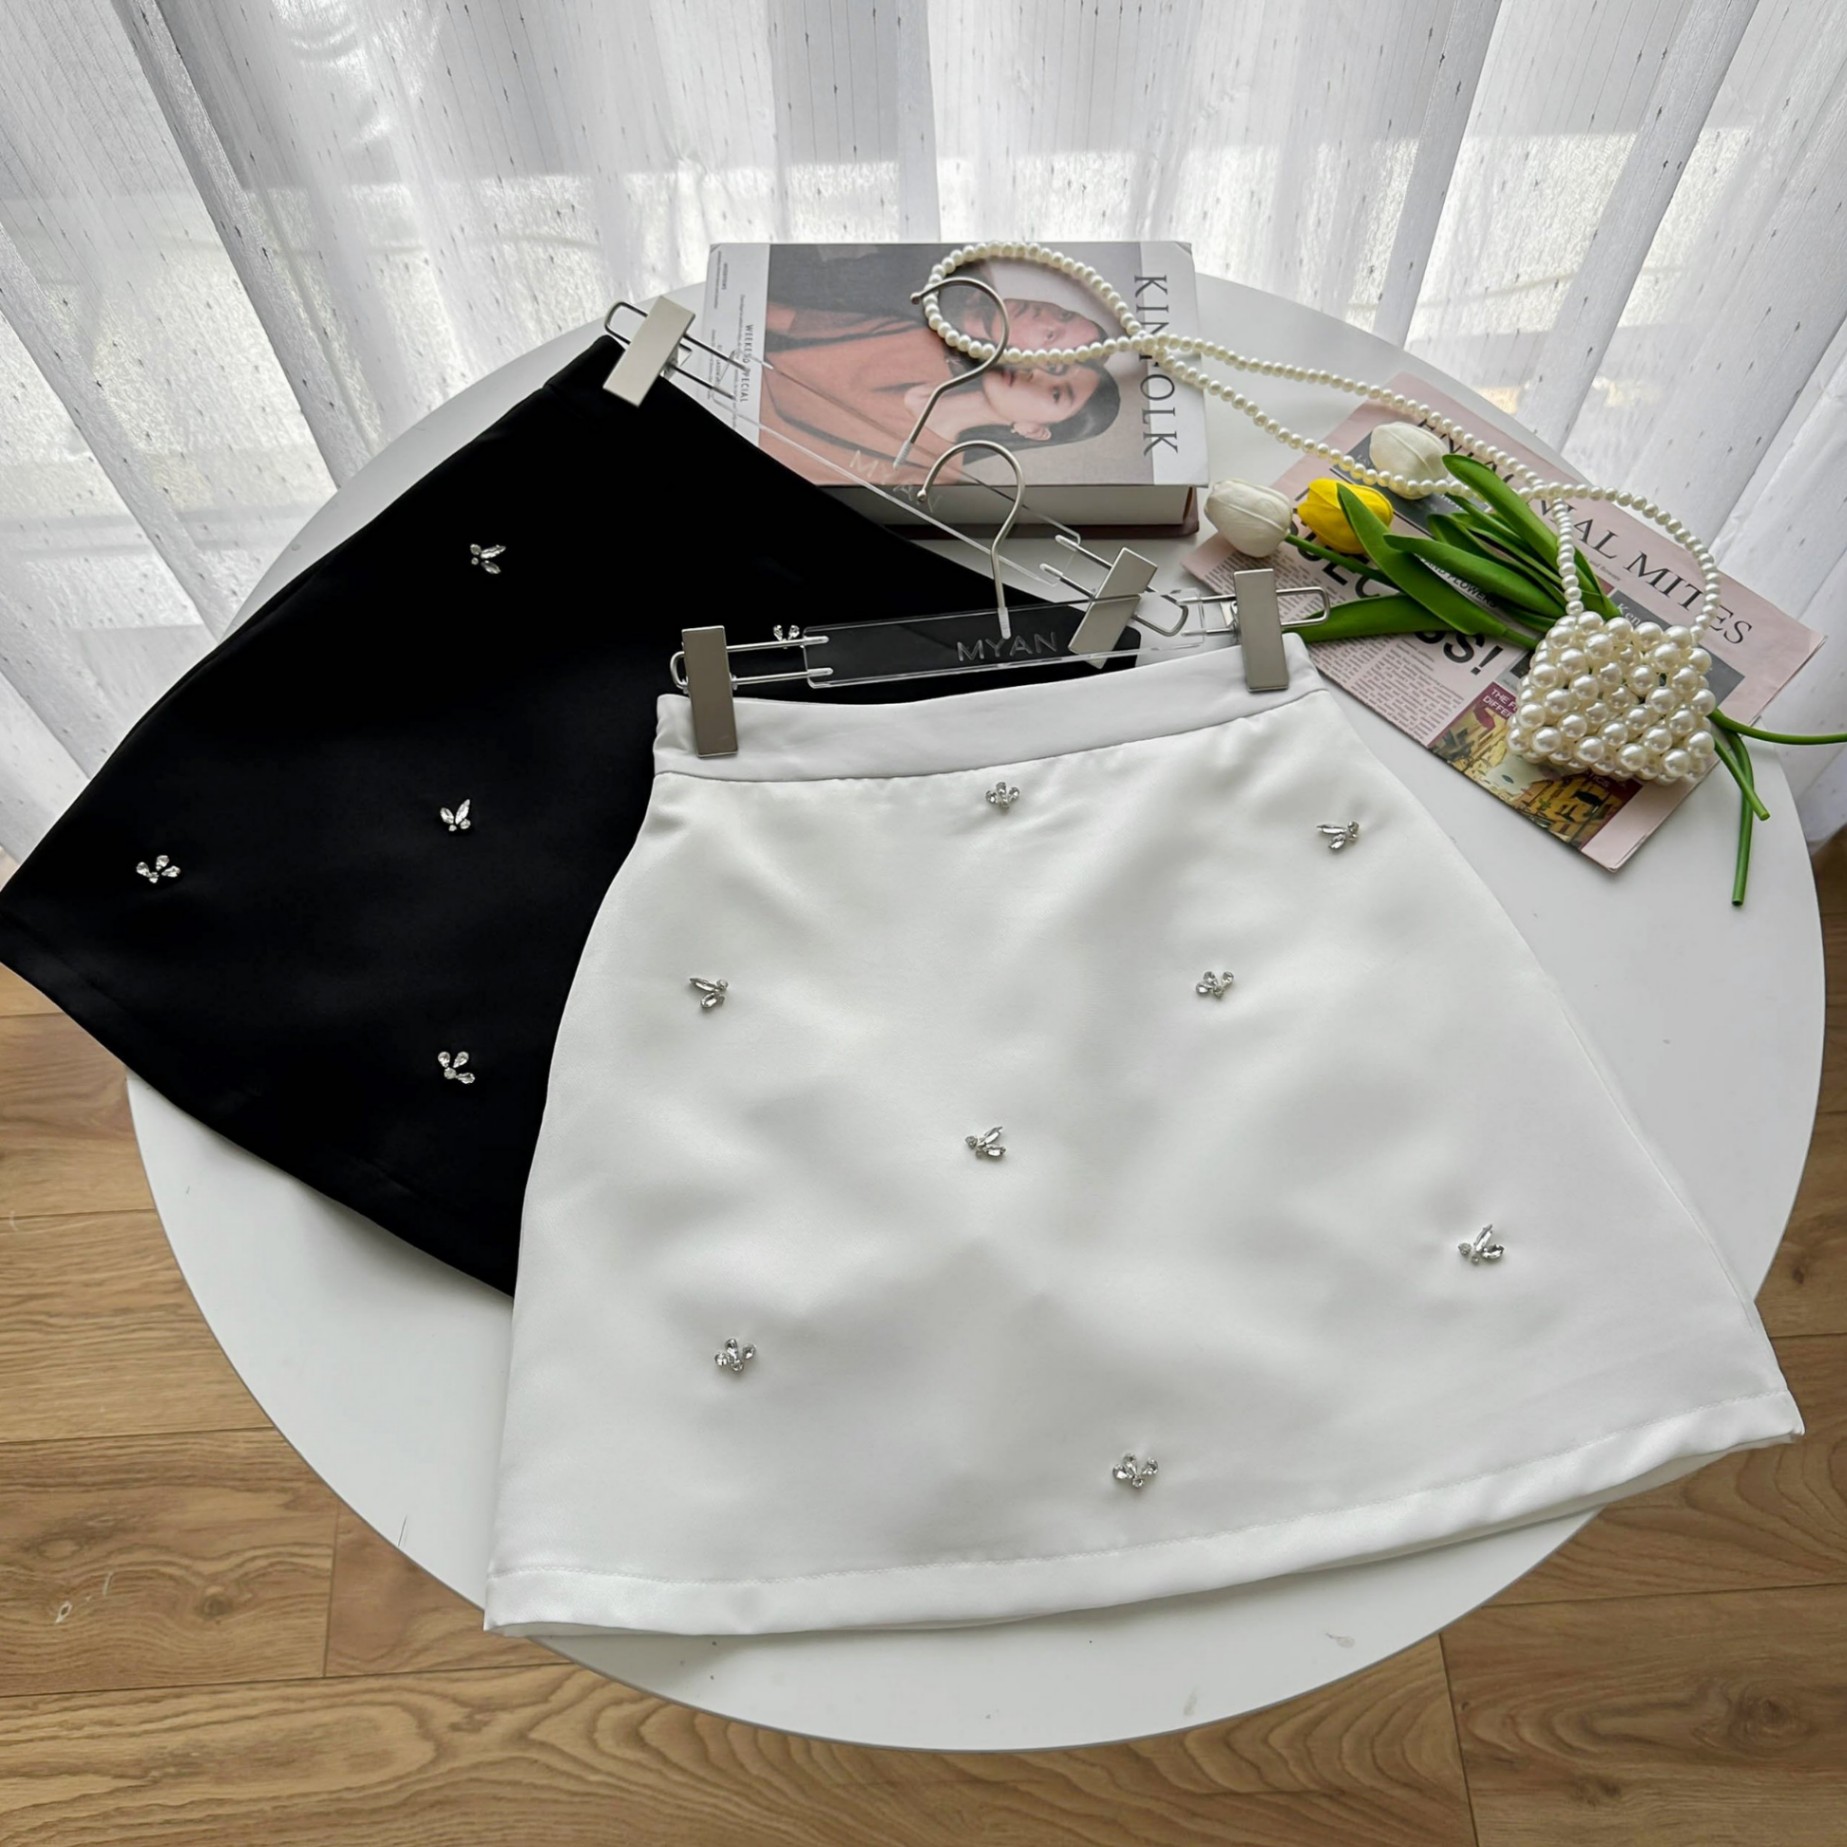 Mẫu váy cưới trắng đẹp của NTK Quyên Nguyễn | Quyên Nguyễn Bridal